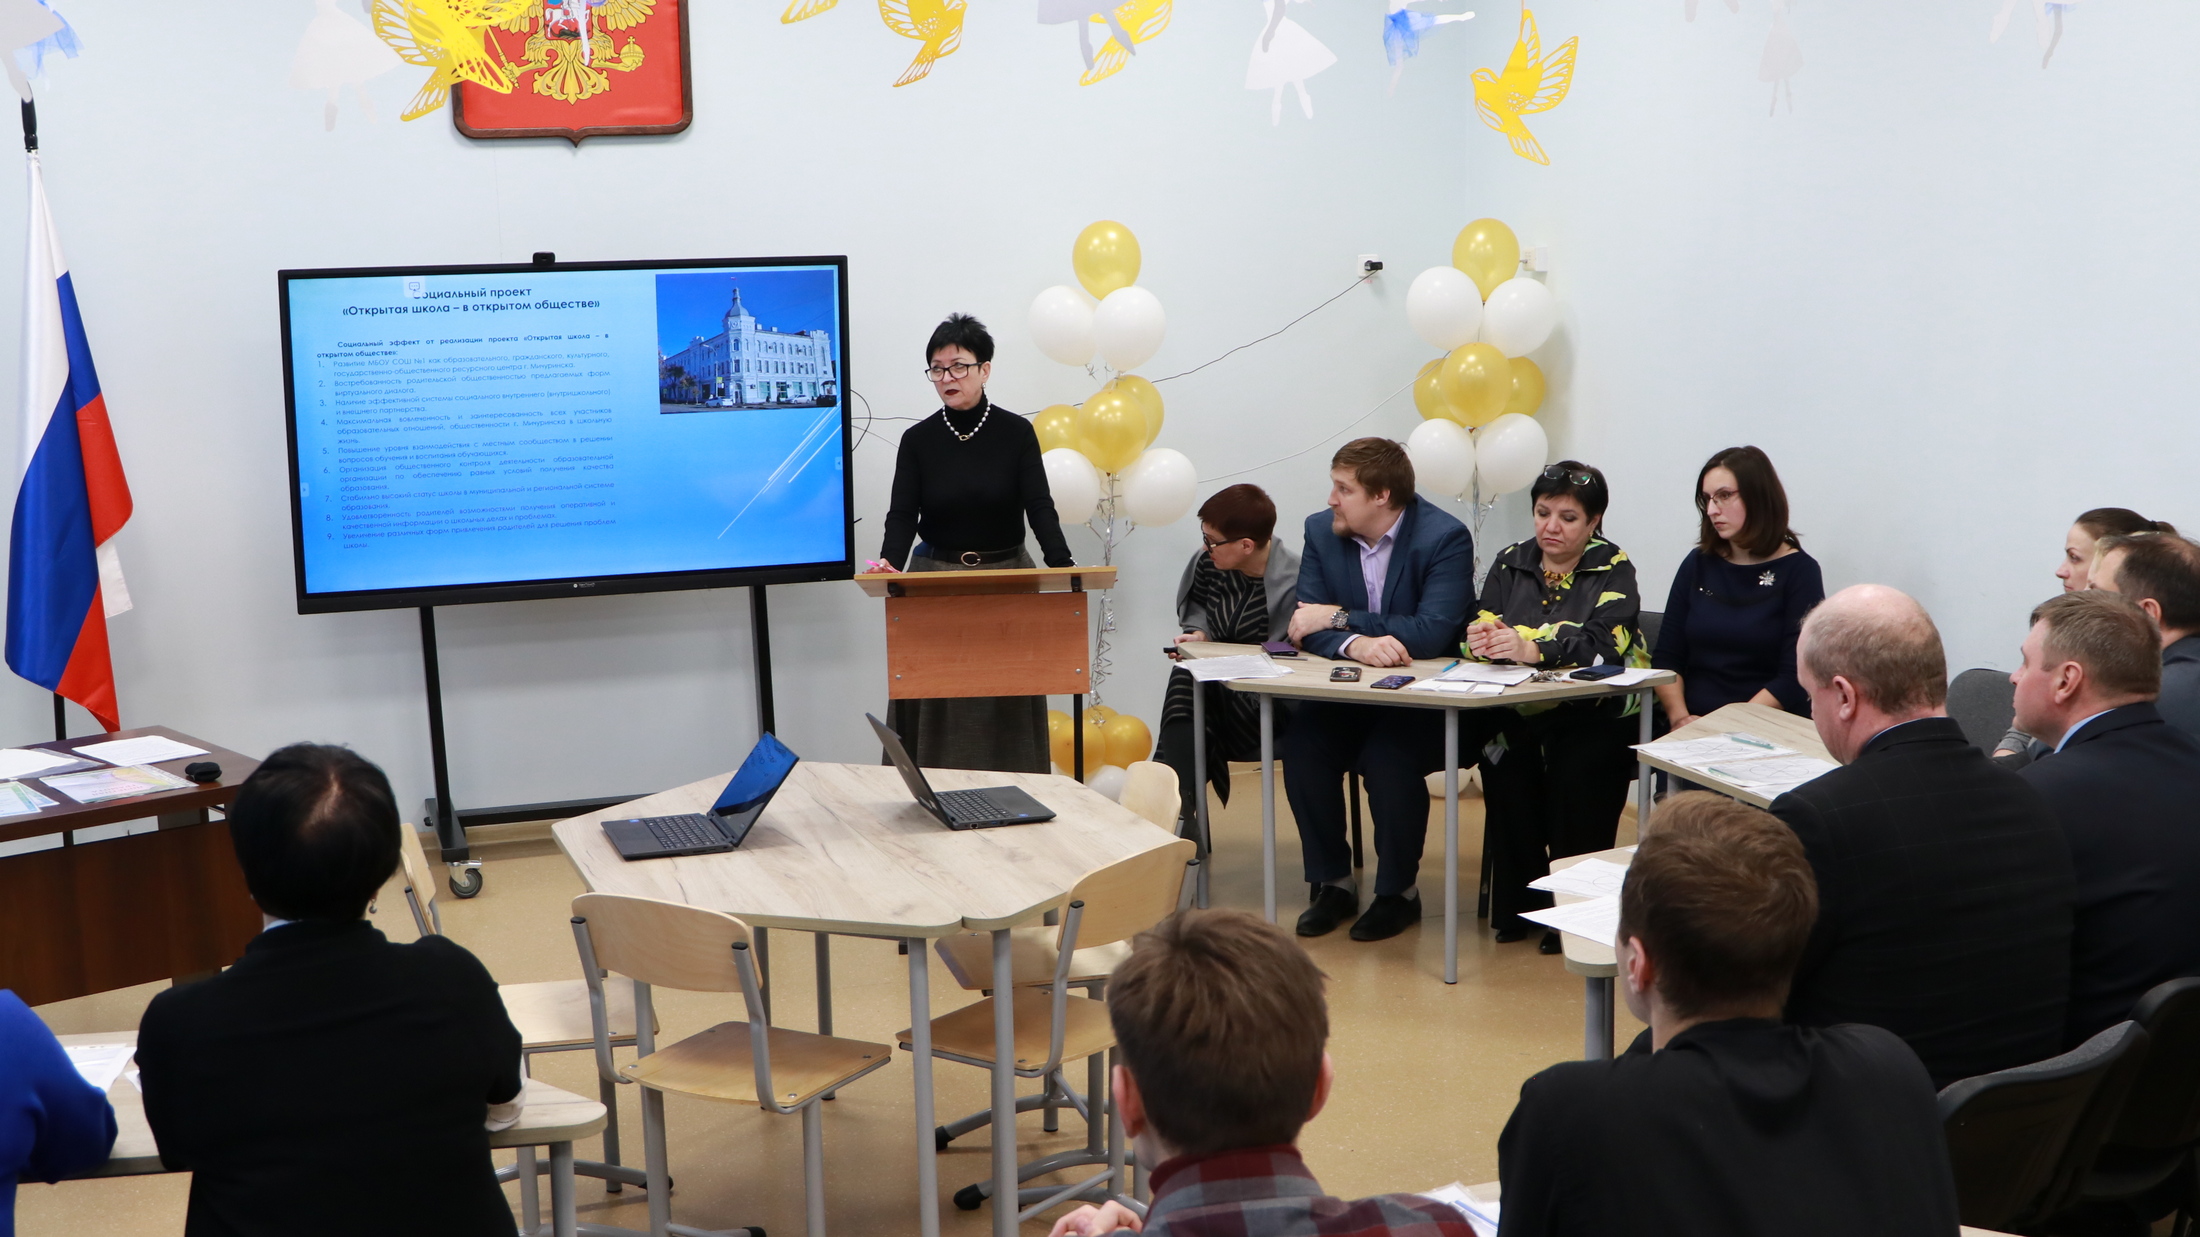 В Мичуринске дали старт новому социальному проекту «Открытая школа – в открытом обществе».